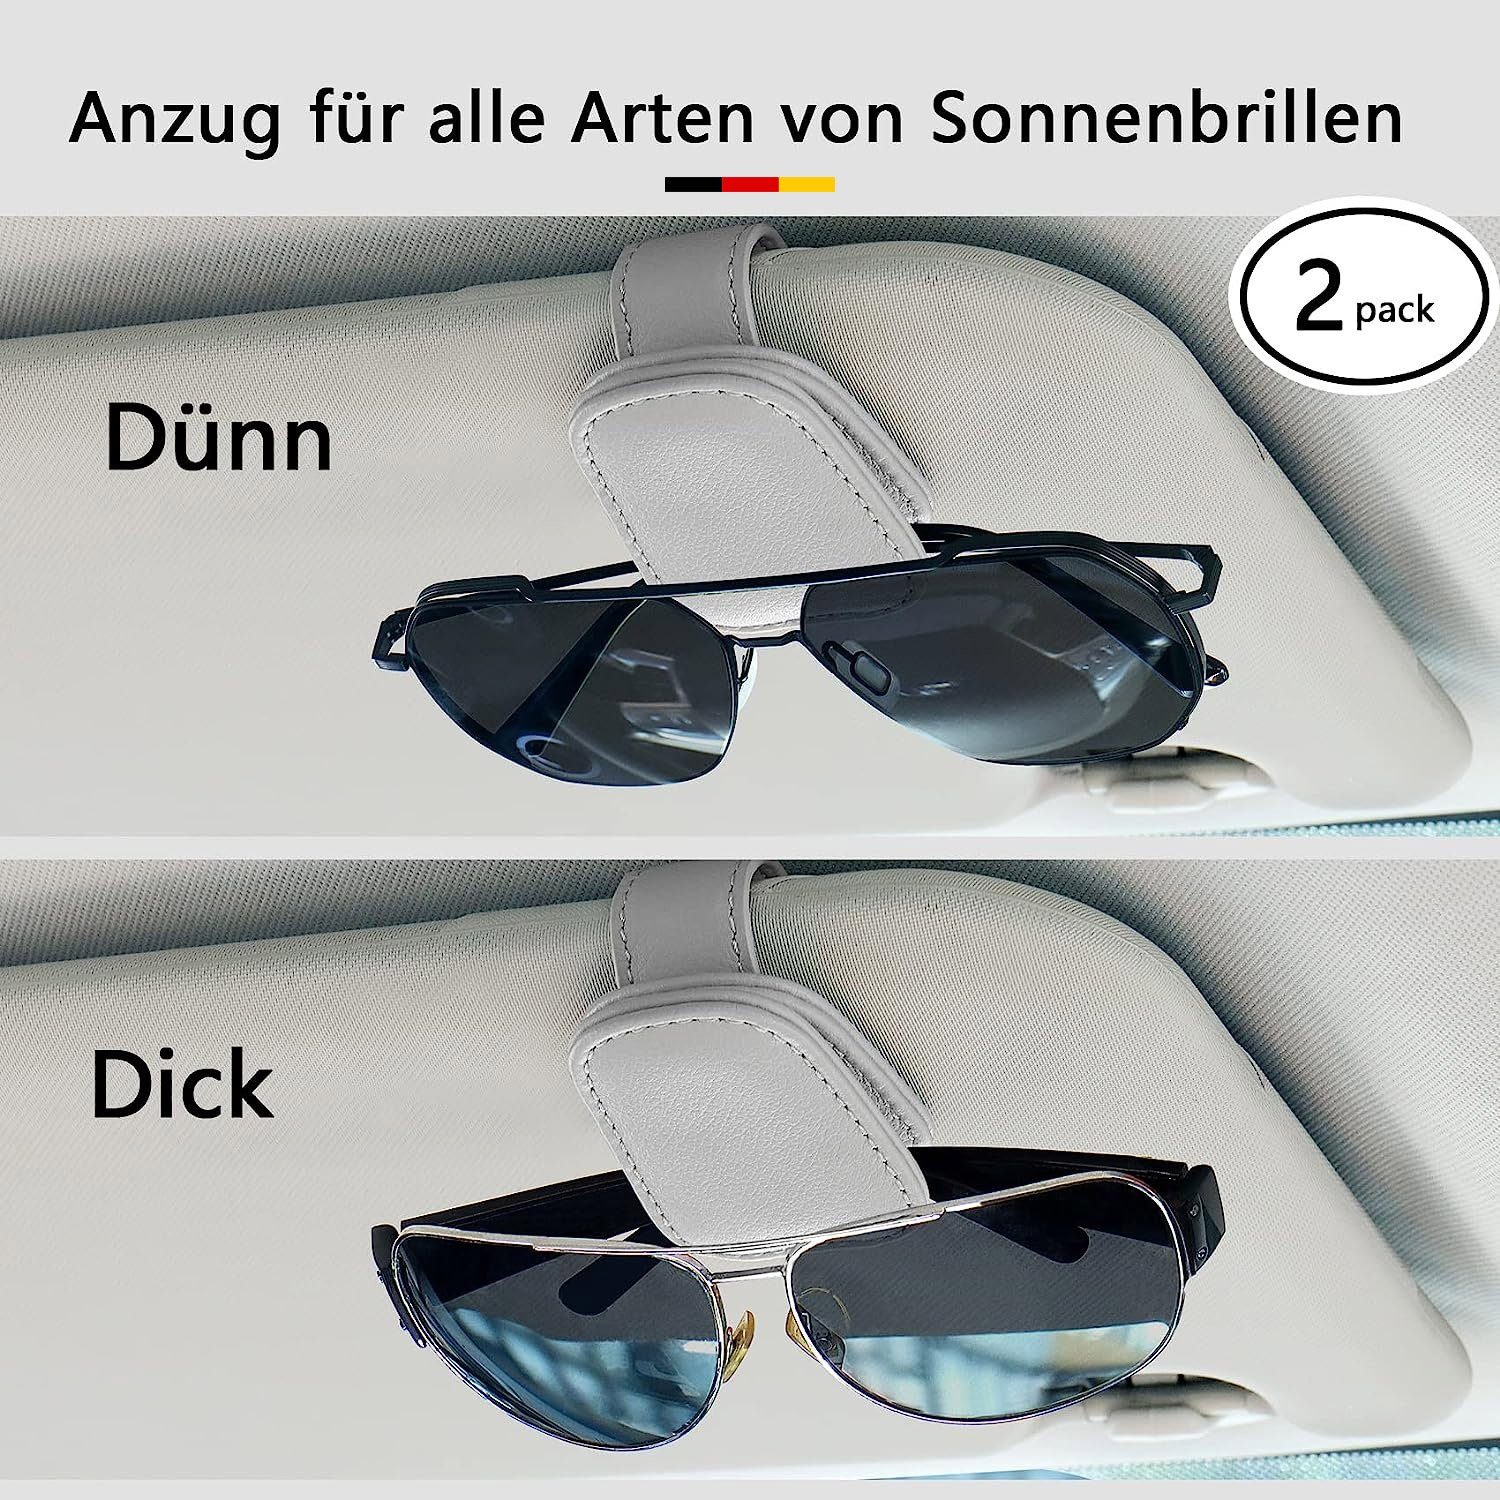 2er Set Brillenhalter Auto Sonnenblende Sonnenbrillen kaufen bei